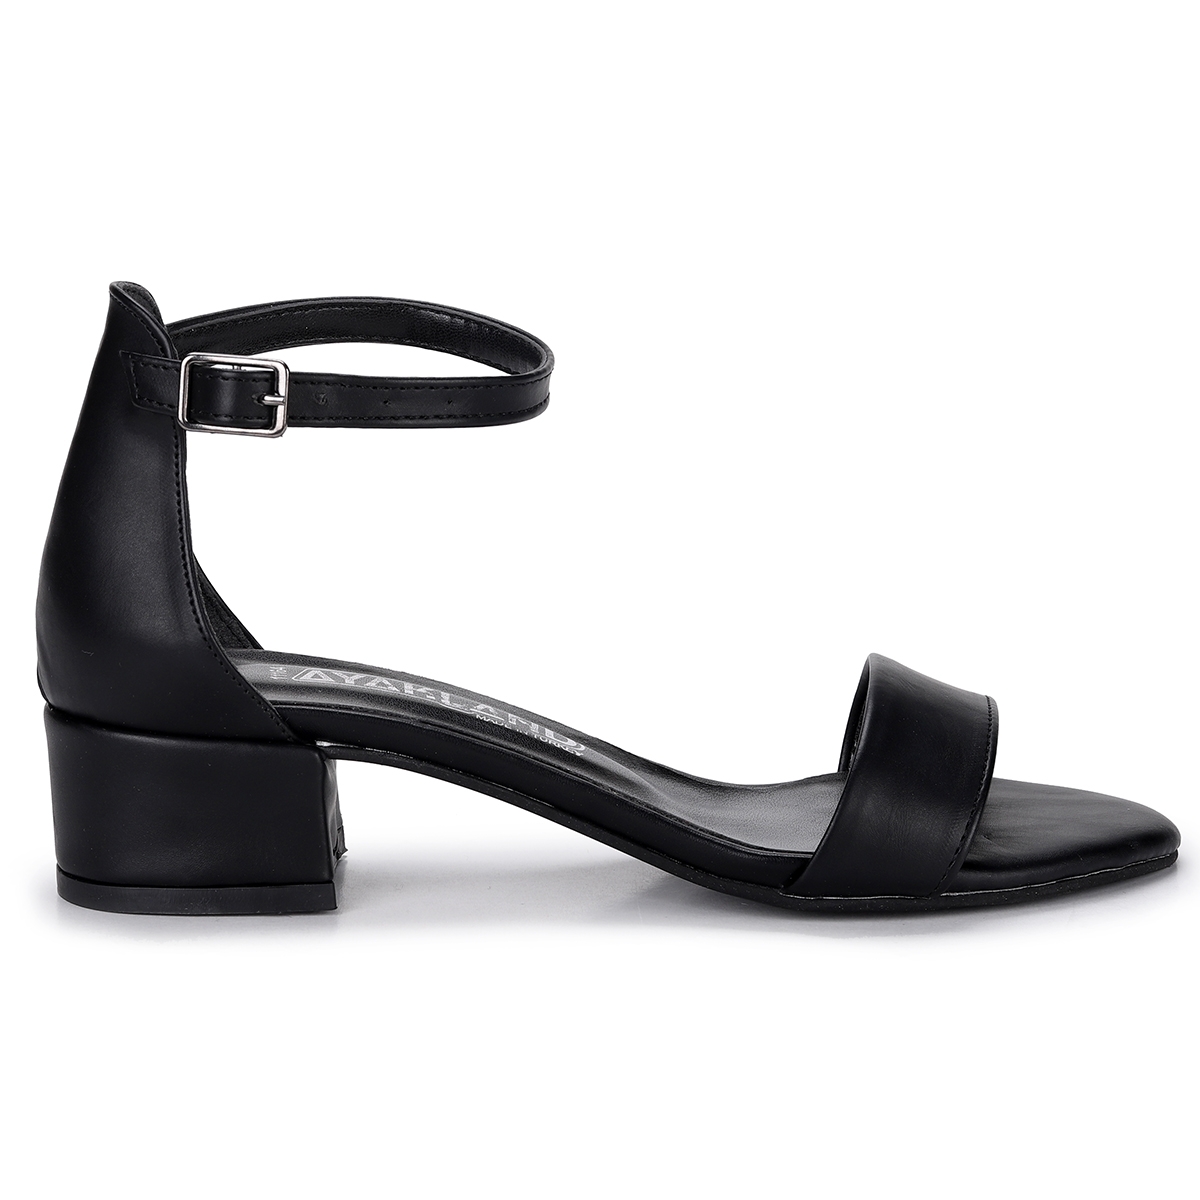 Flo 204-05 Cilt 3 Cm Topuk Bayan Sandalet Ayakkabı Siyah. 6